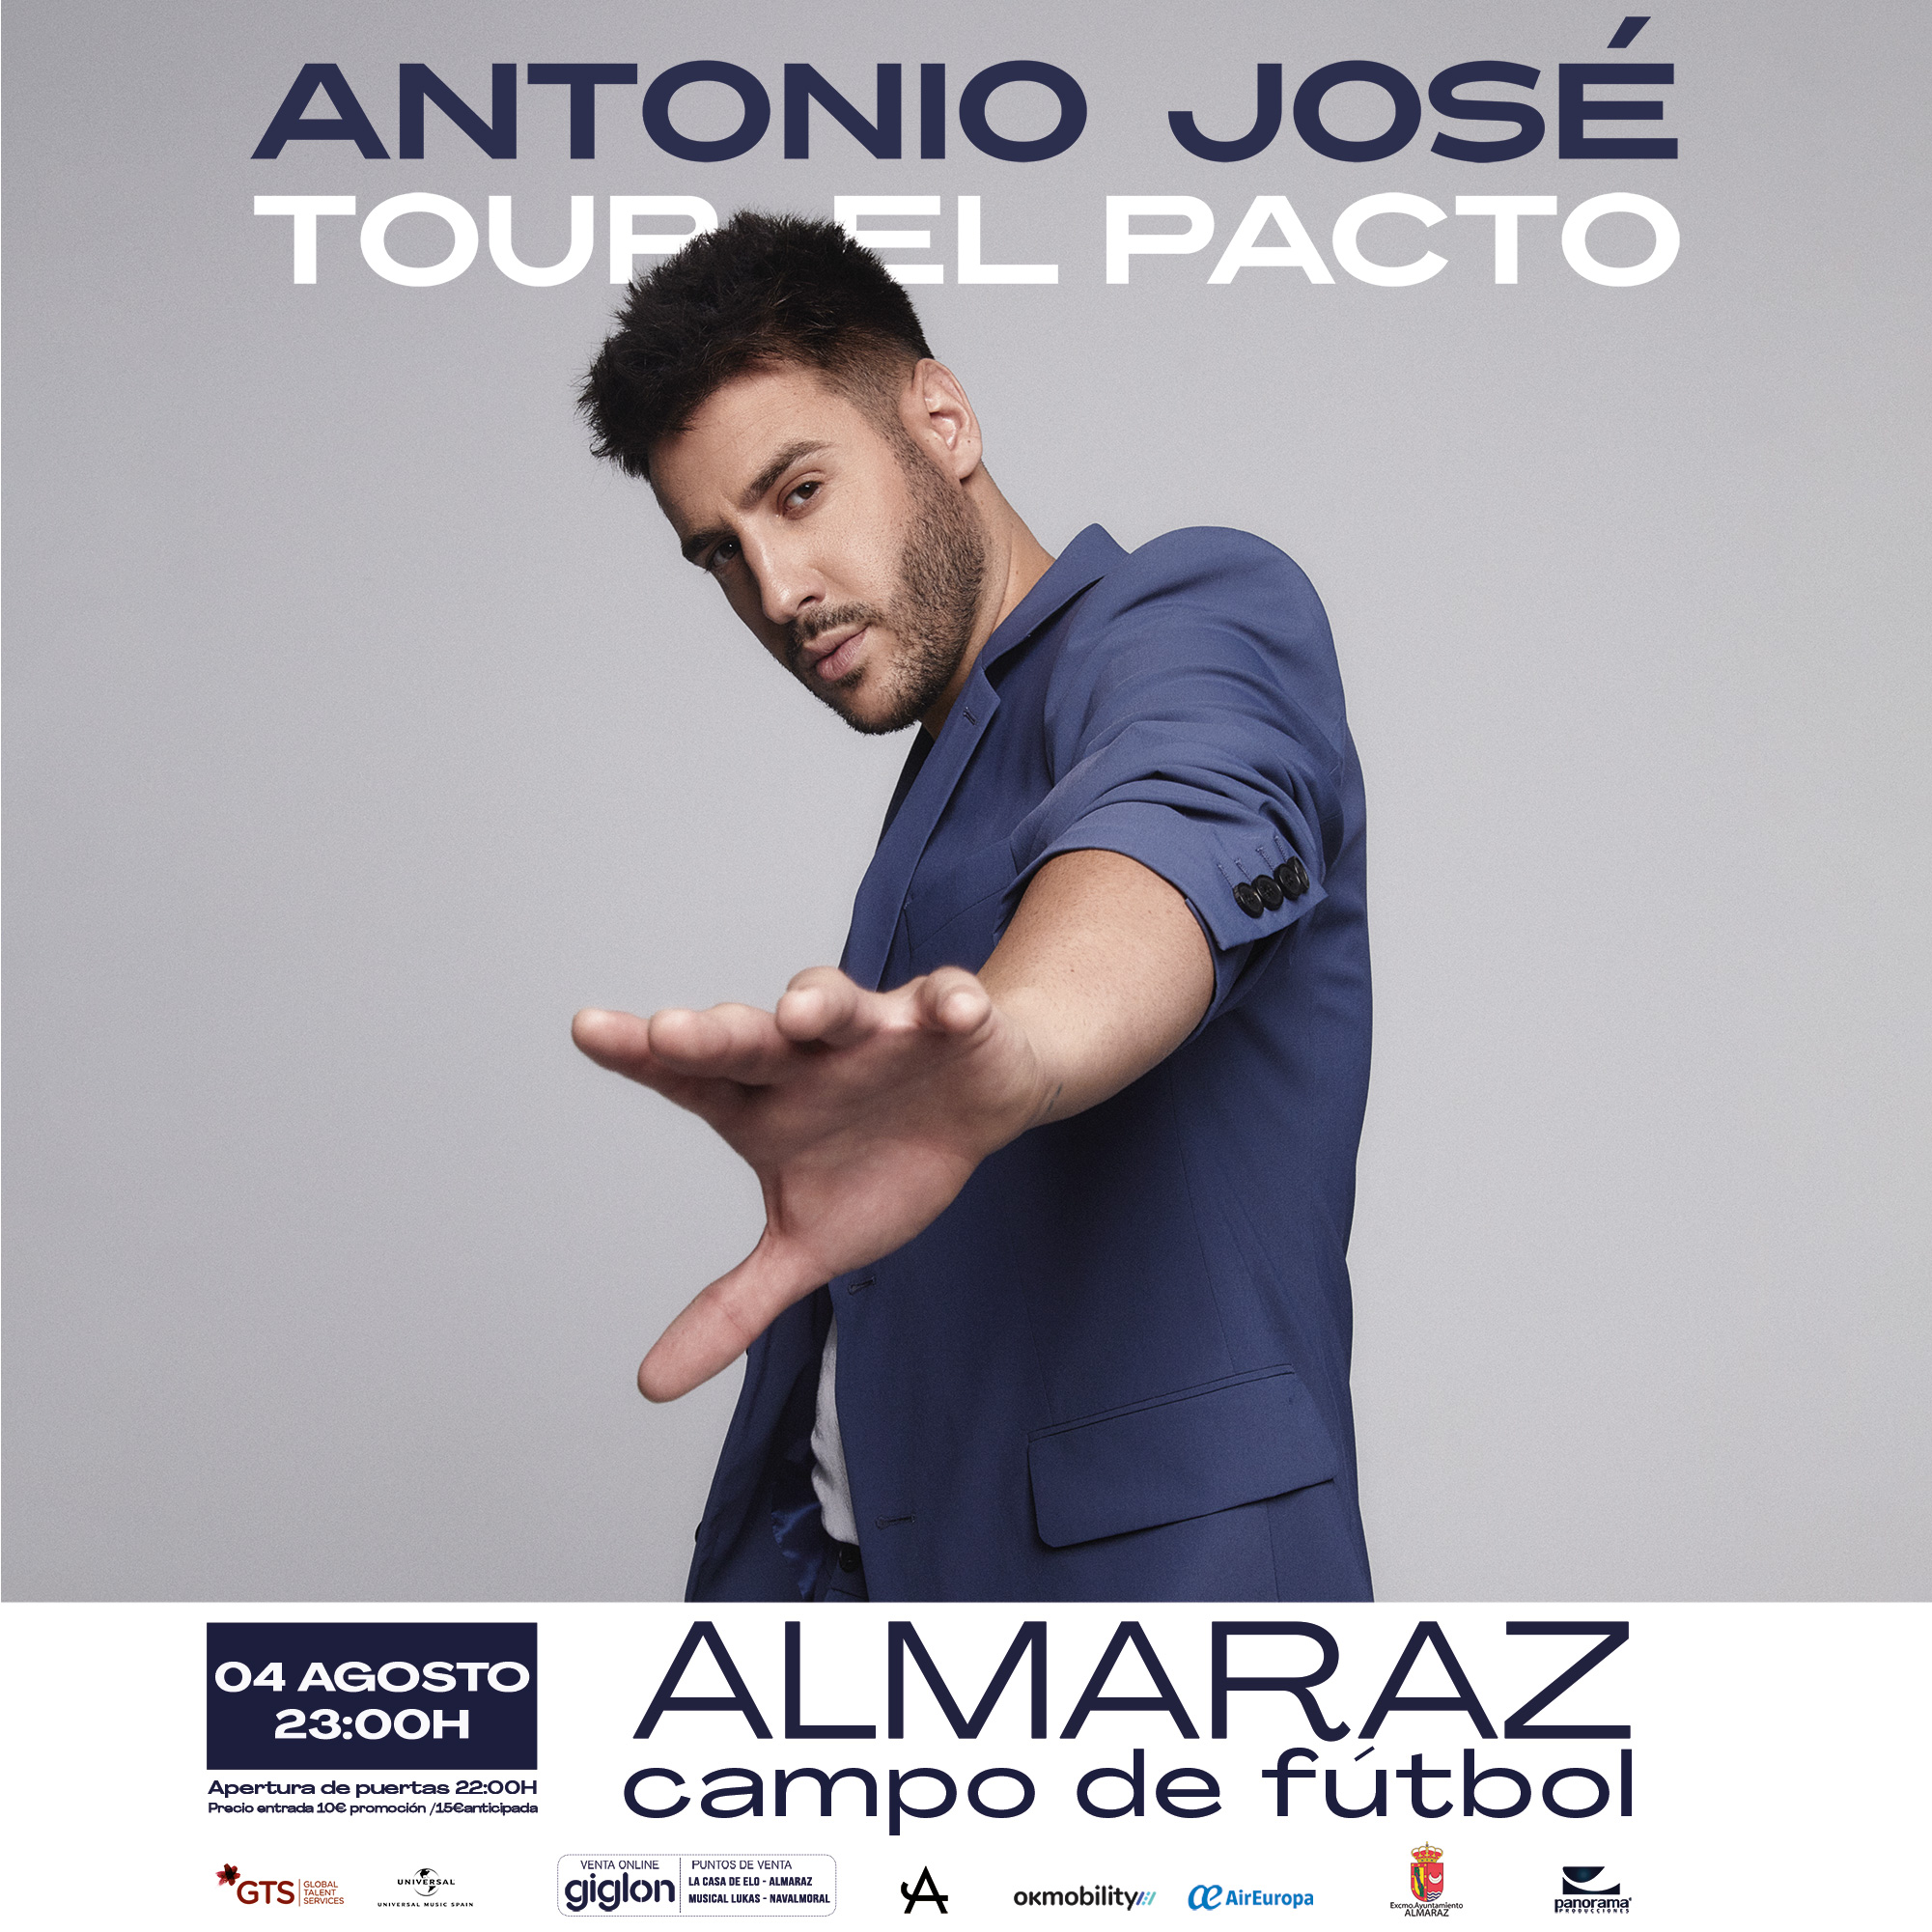 Antonio José - Eventos - Live las ventas